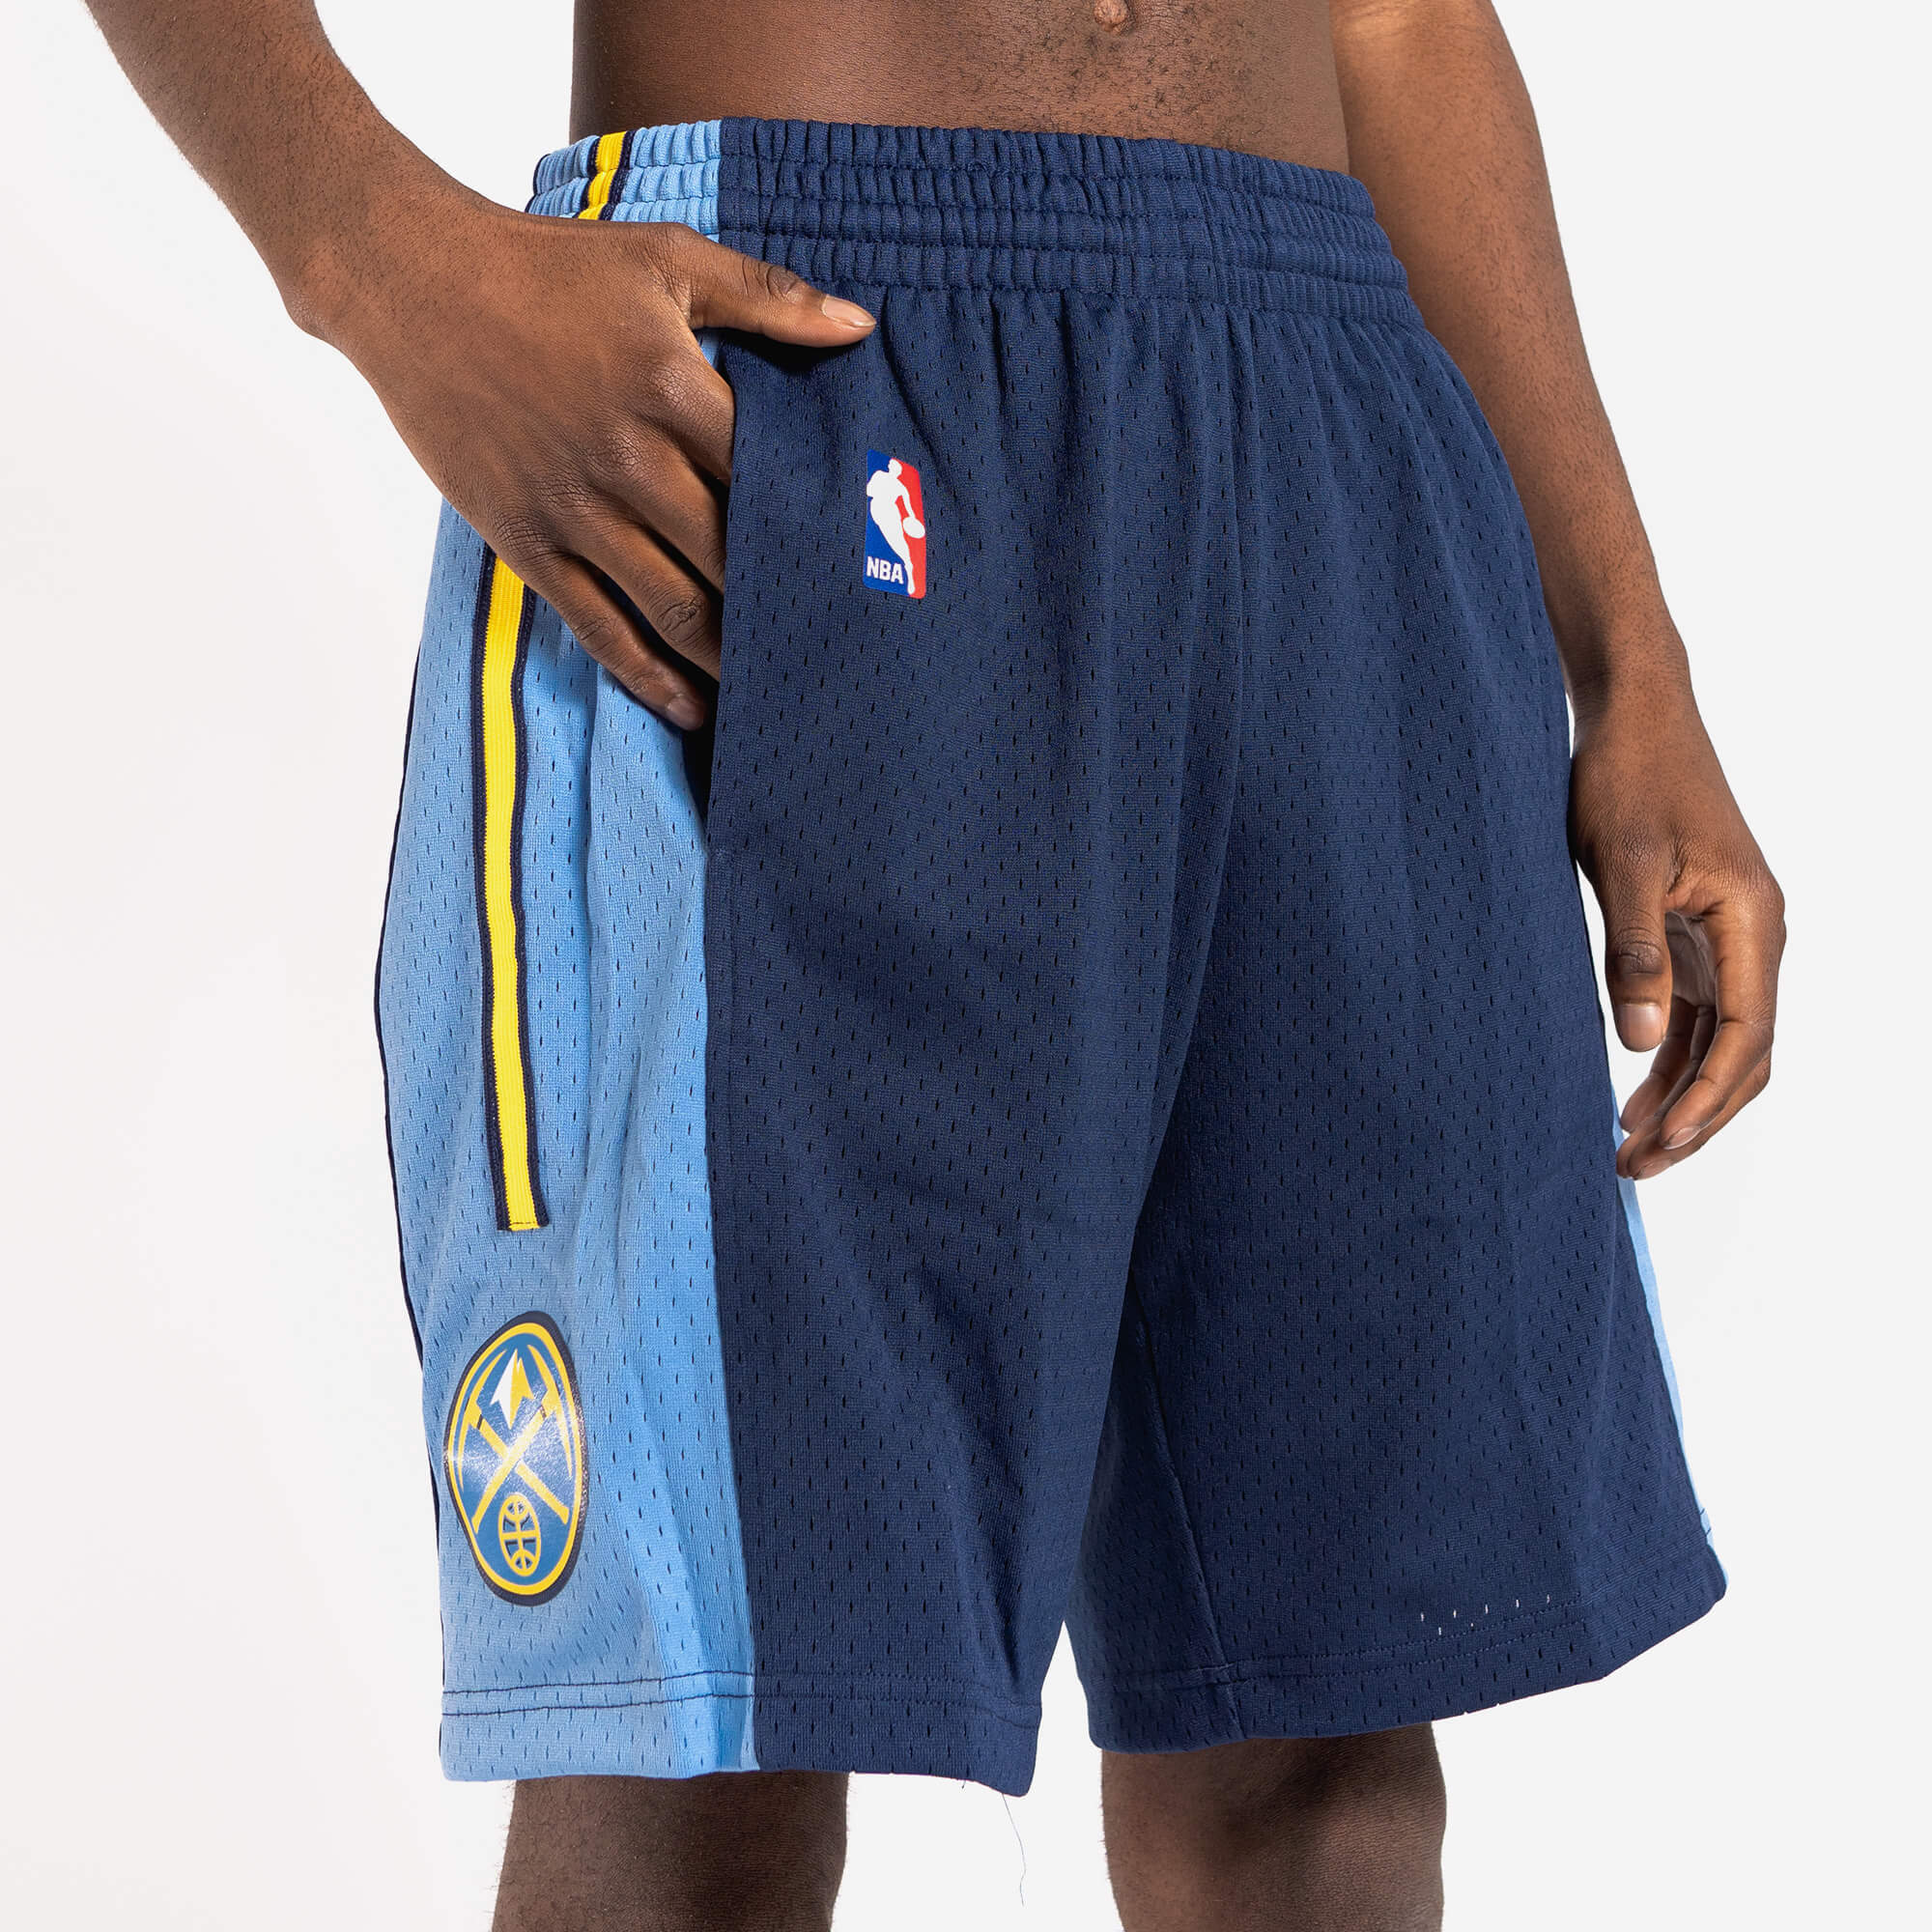 NBA Denver Nuggets Shorts Vintage Denim UNK Basketball -  Norway